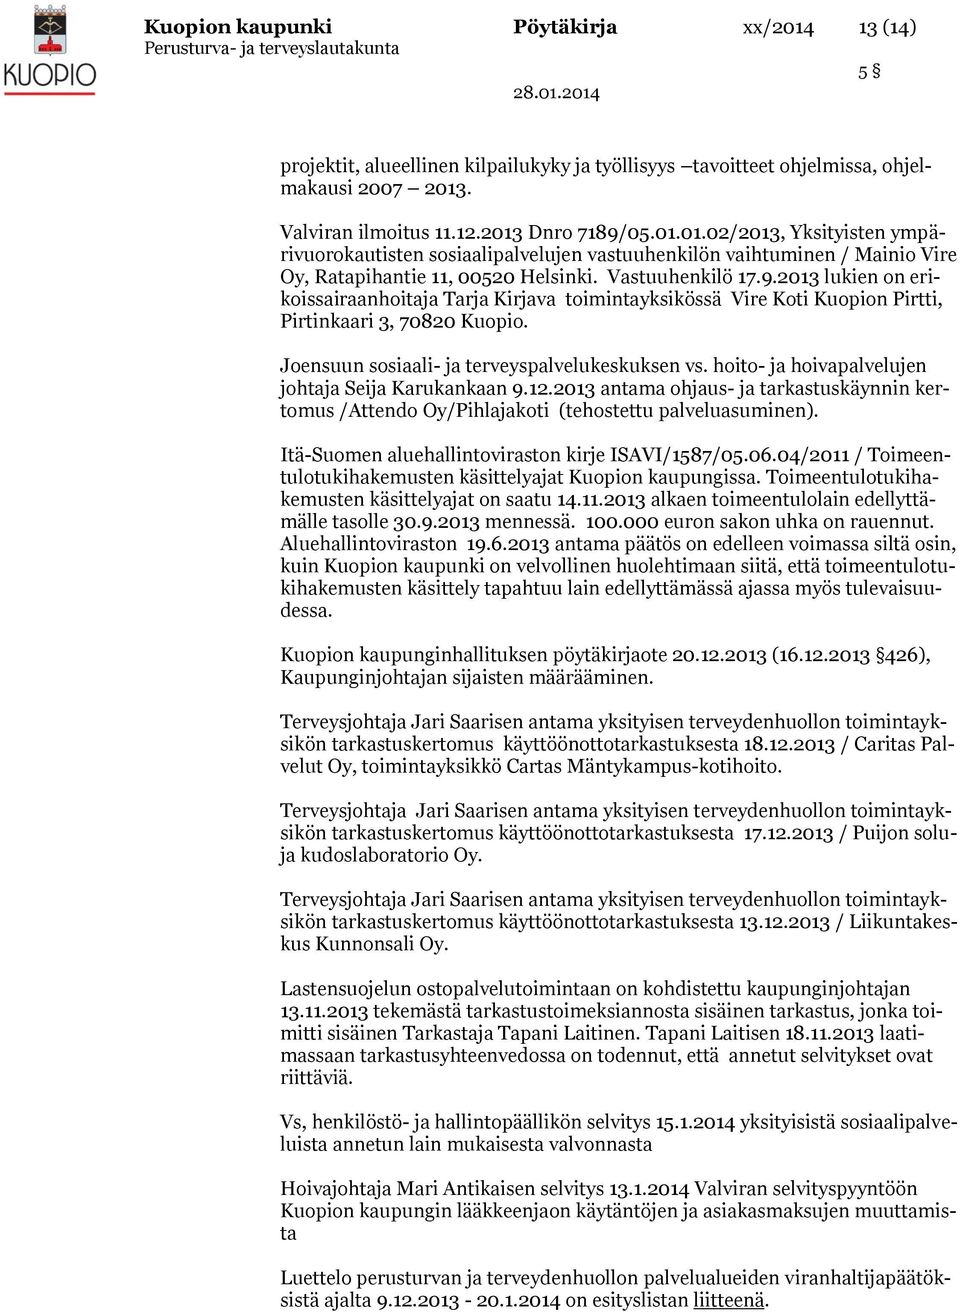 hoito- ja hoivapalvelujen johtaja Seija Karukankaan 9.12.2013 antama ohjaus- ja tarkastuskäynnin kertomus /Attendo Oy/Pihlajakoti (tehostettu palveluasuminen).